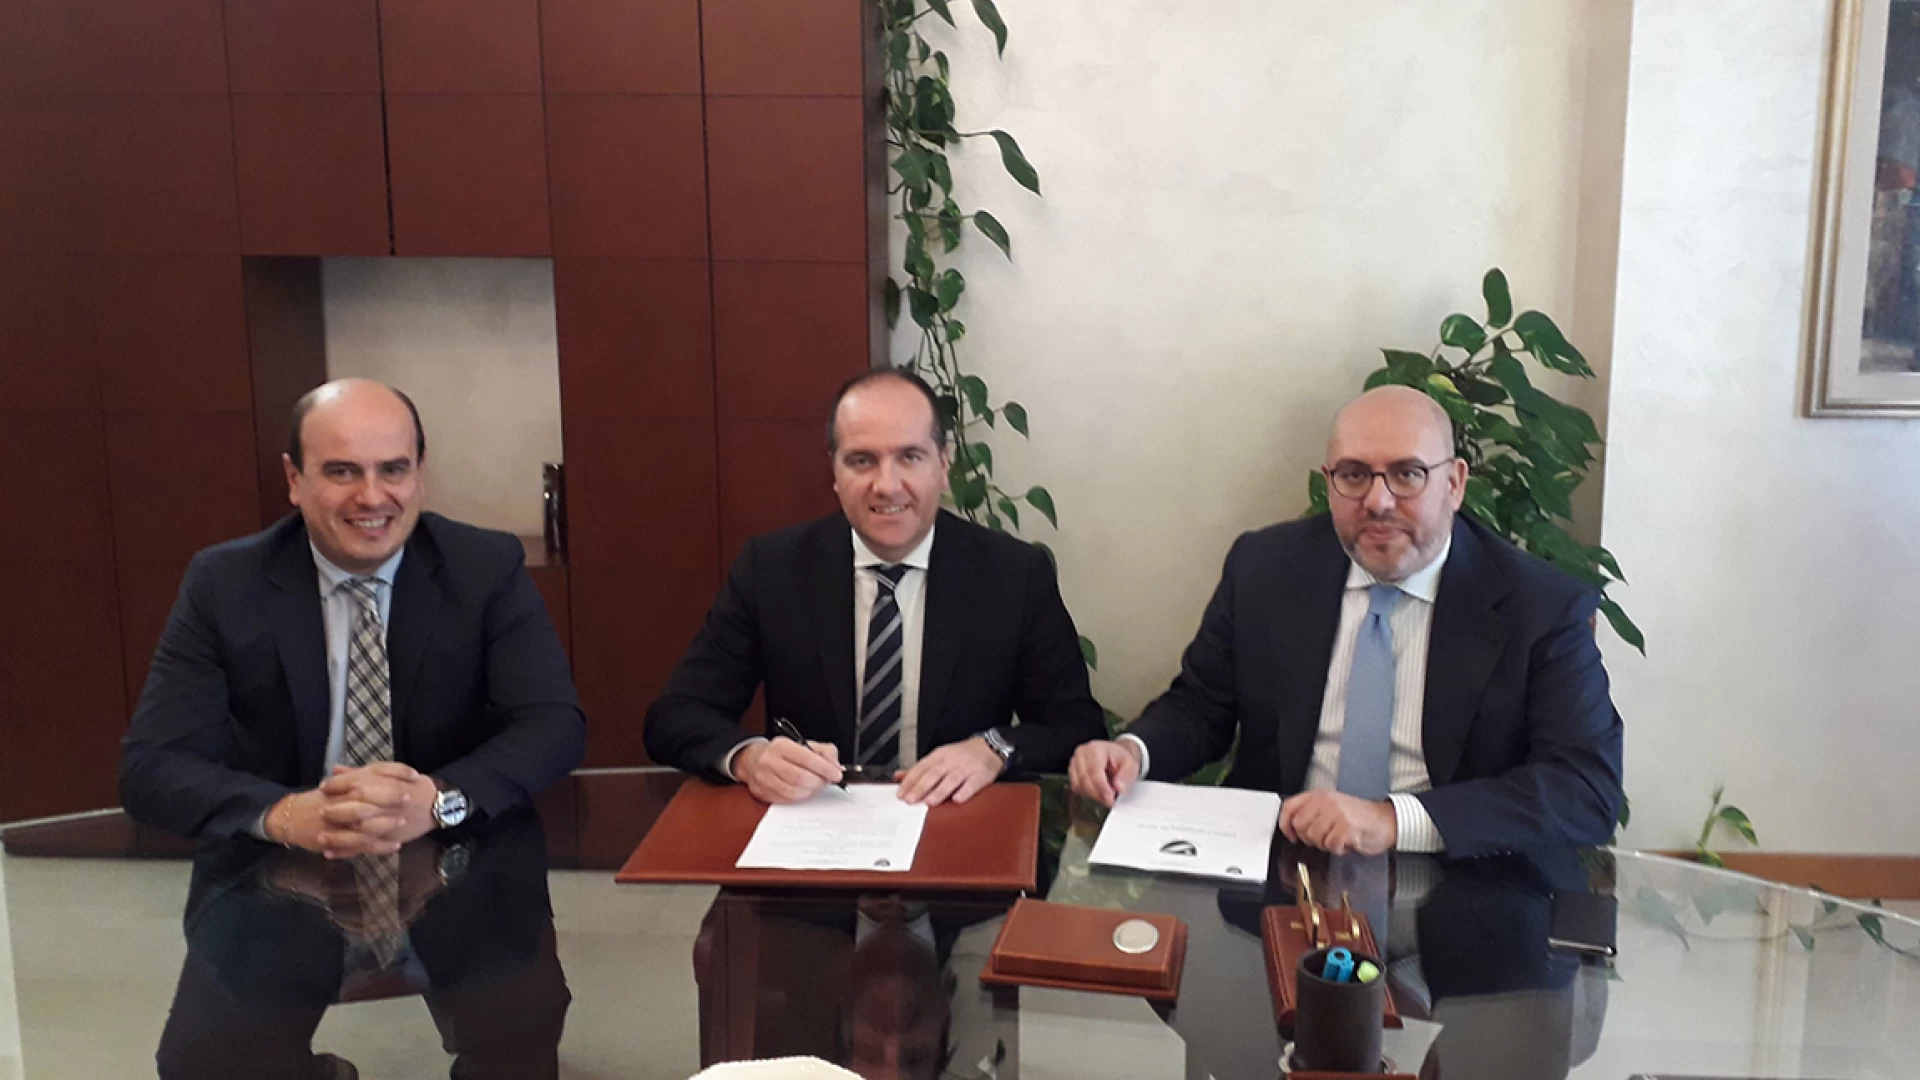 Campobasso: presentata questa mattina la proposta di legge sulla Montagna firmata dai consiglieri Andrea Di Lucente, Salvatore Micone e Armandino D’Egidio.